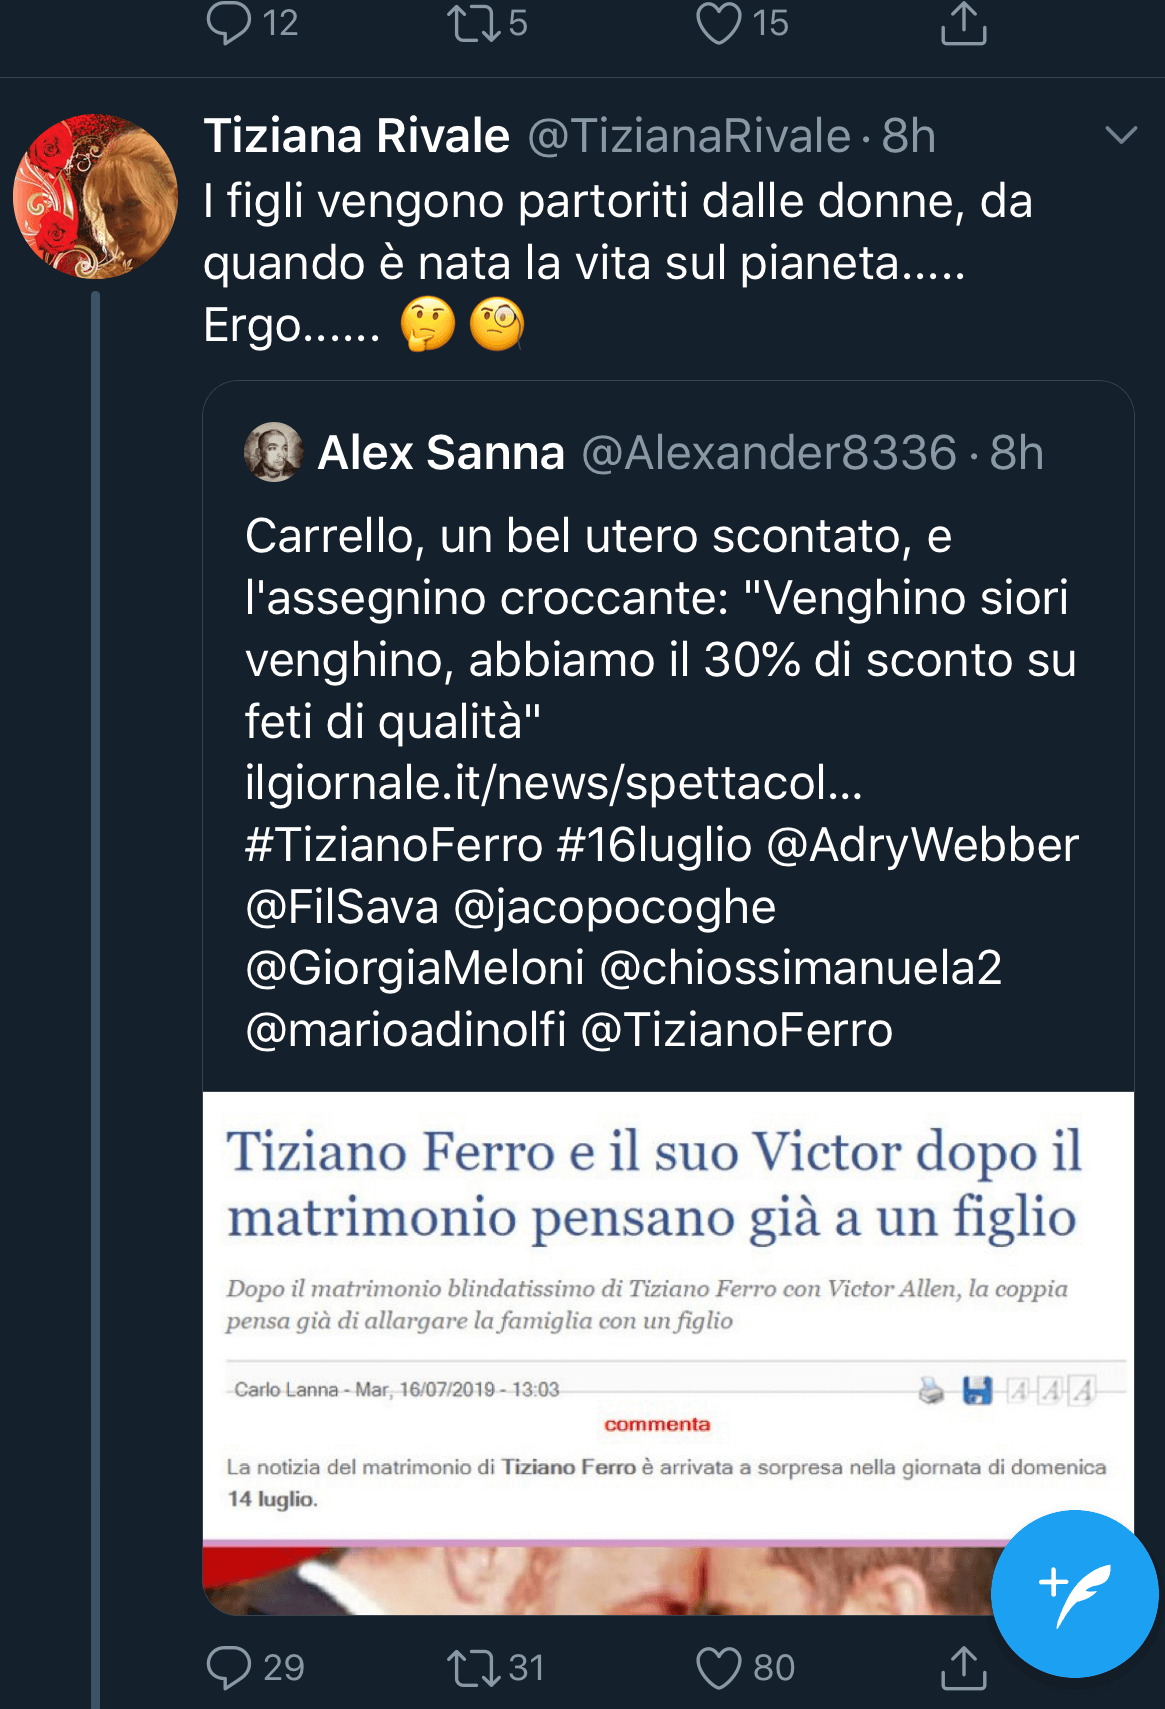 Tiziana Rivale contro Tiziano Ferro: "I figli vengono partoriti dalle donne, adottasse" - IMG 4858 - Gay.it